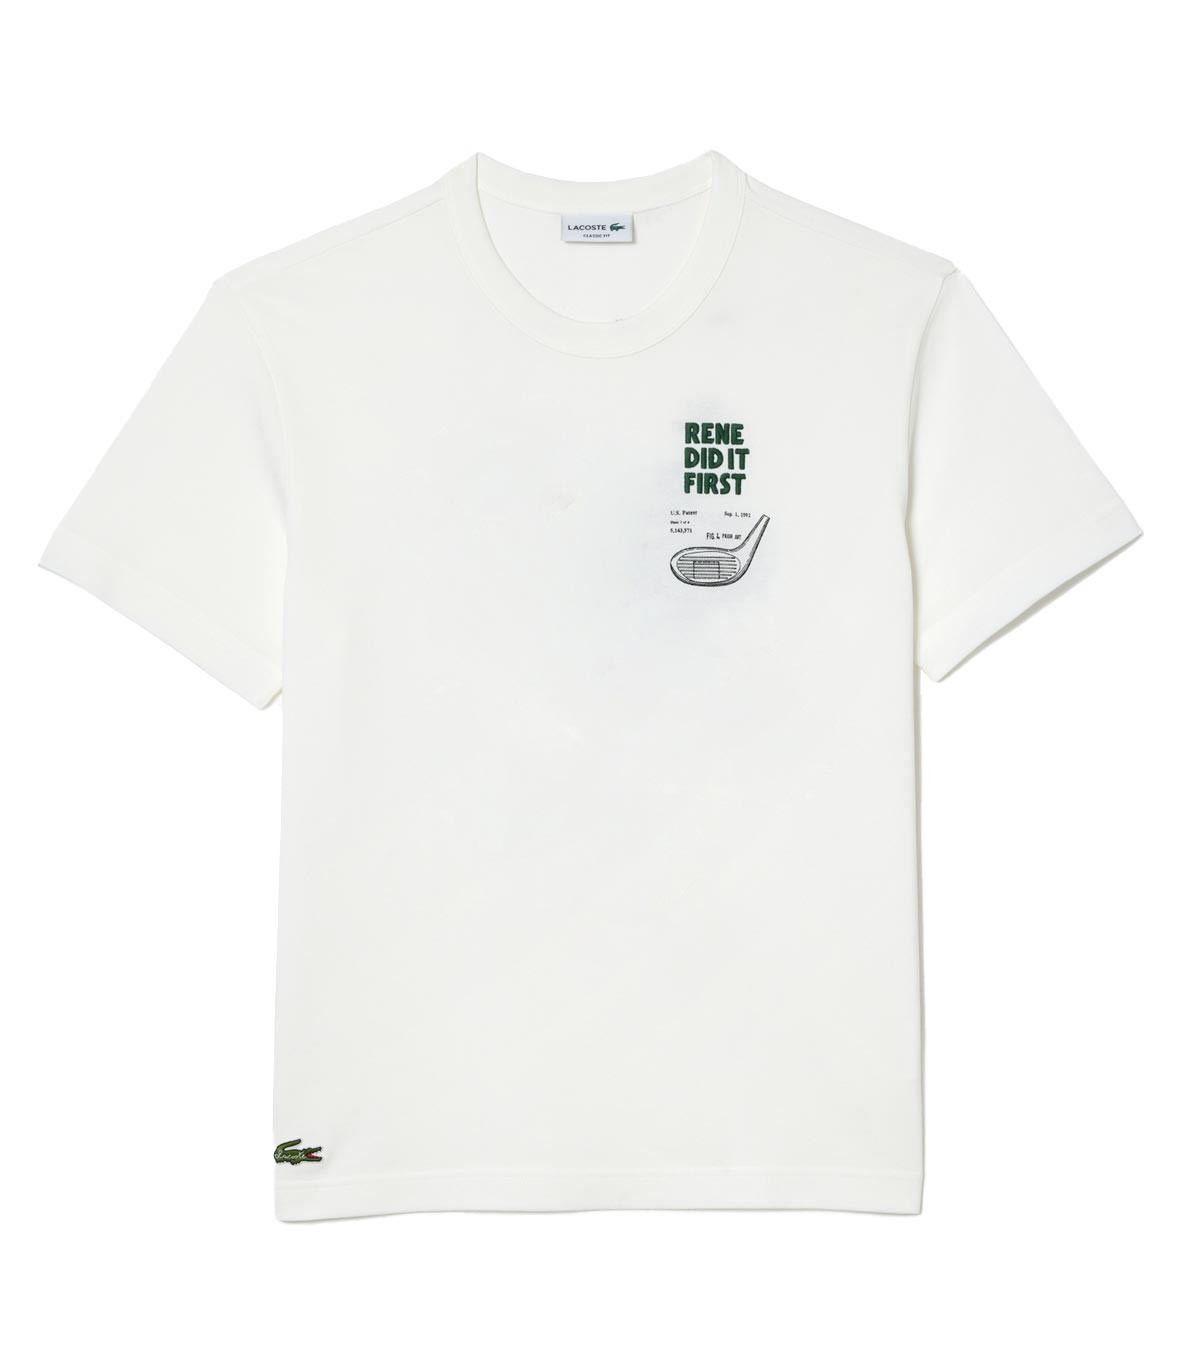 Lacoste - Camiseta con Estampado 'Rene Did It First' - Blanco